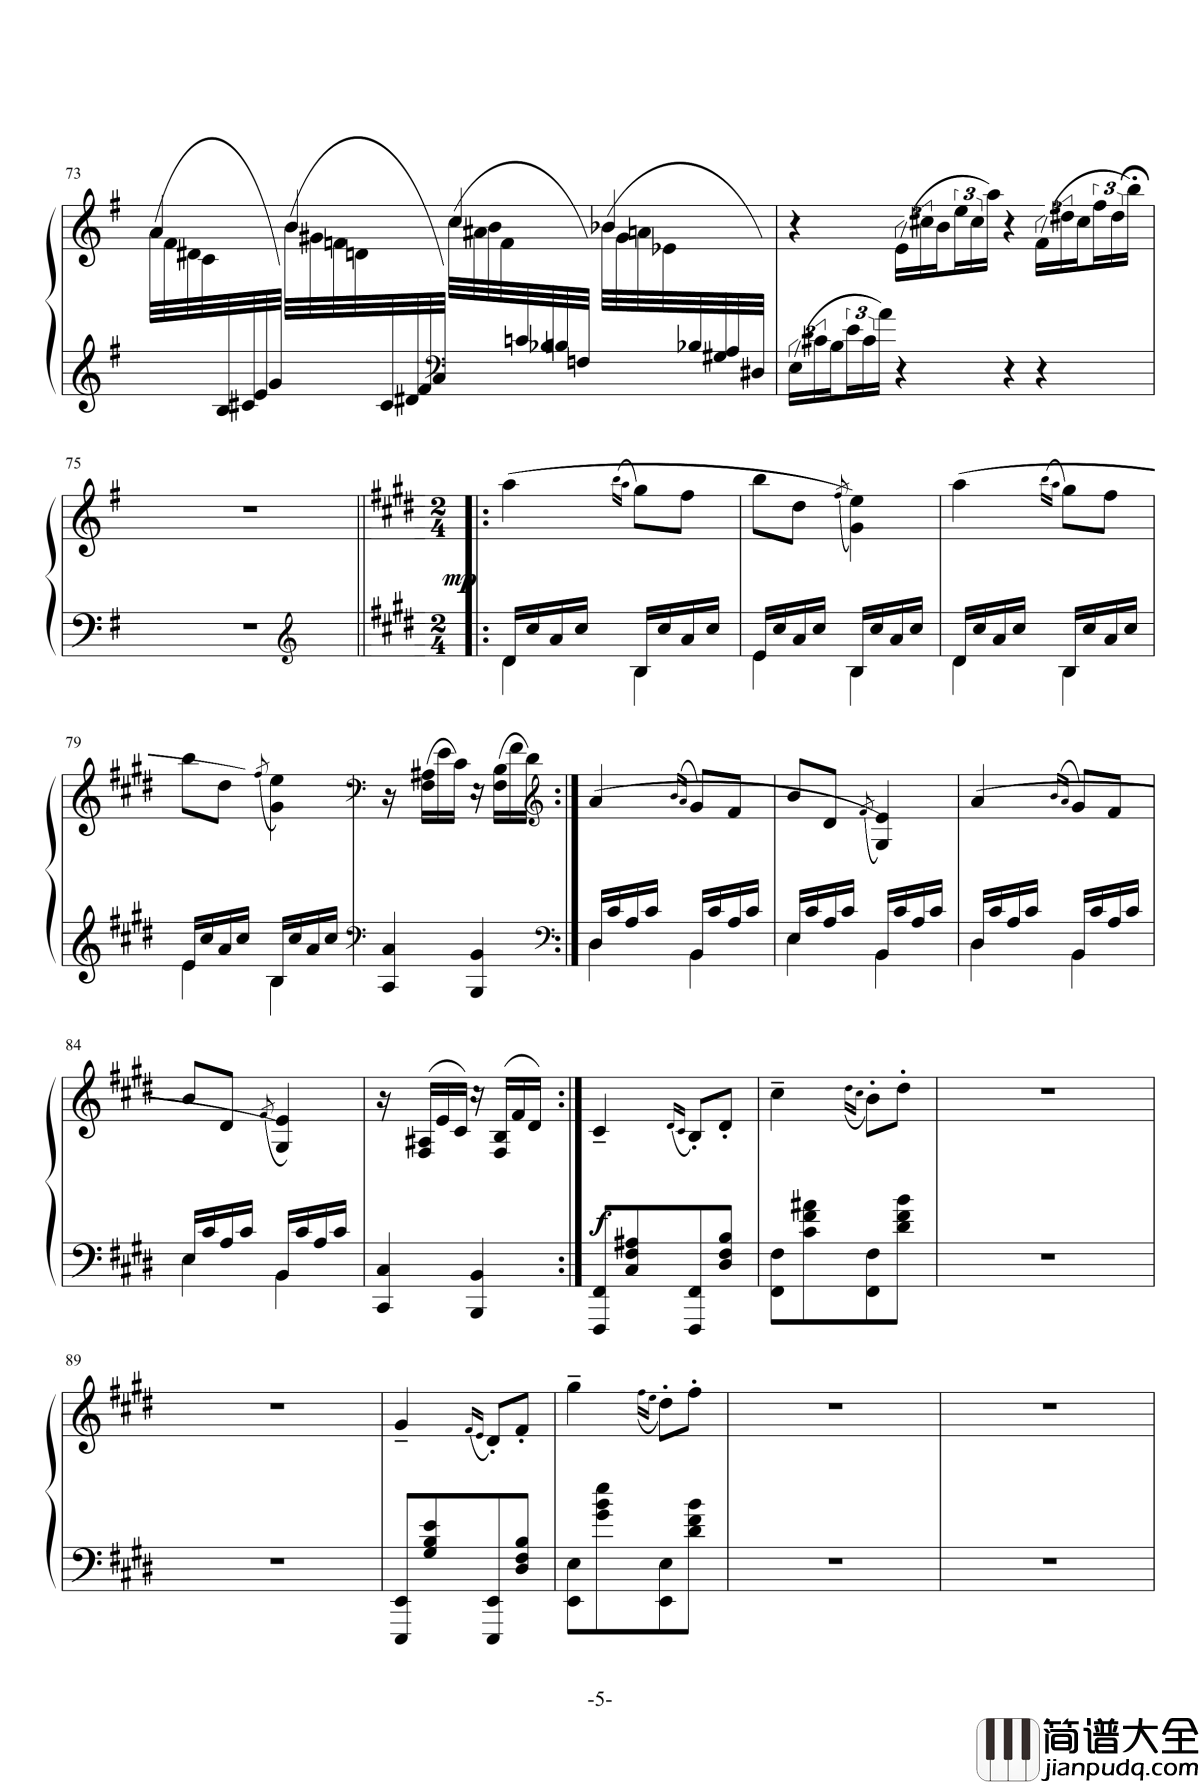 小温狂想曲_3钢琴谱—具有匈牙利狂想曲风格的一曲。—我的代表作_一个球